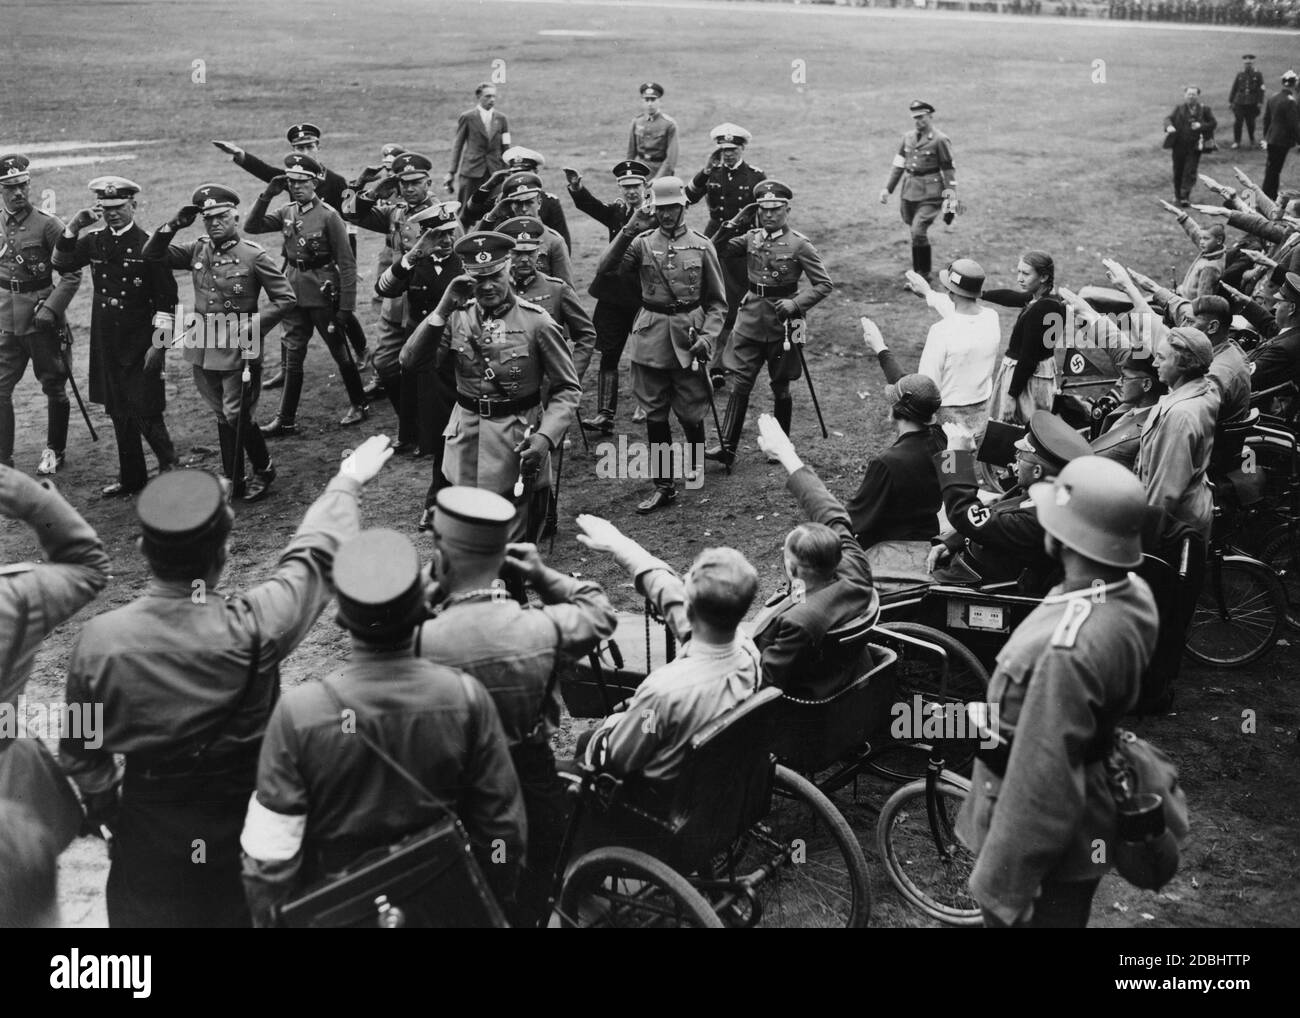 Le jour de la Reichswehr sur le champ de Zeppelin, Werner von Blomberg (devant), l'amiral Erich Raeder (à gauche) et Werner von Fritsch saluent les personnes handicapées, dont certaines en uniforme nazi. Banque D'Images